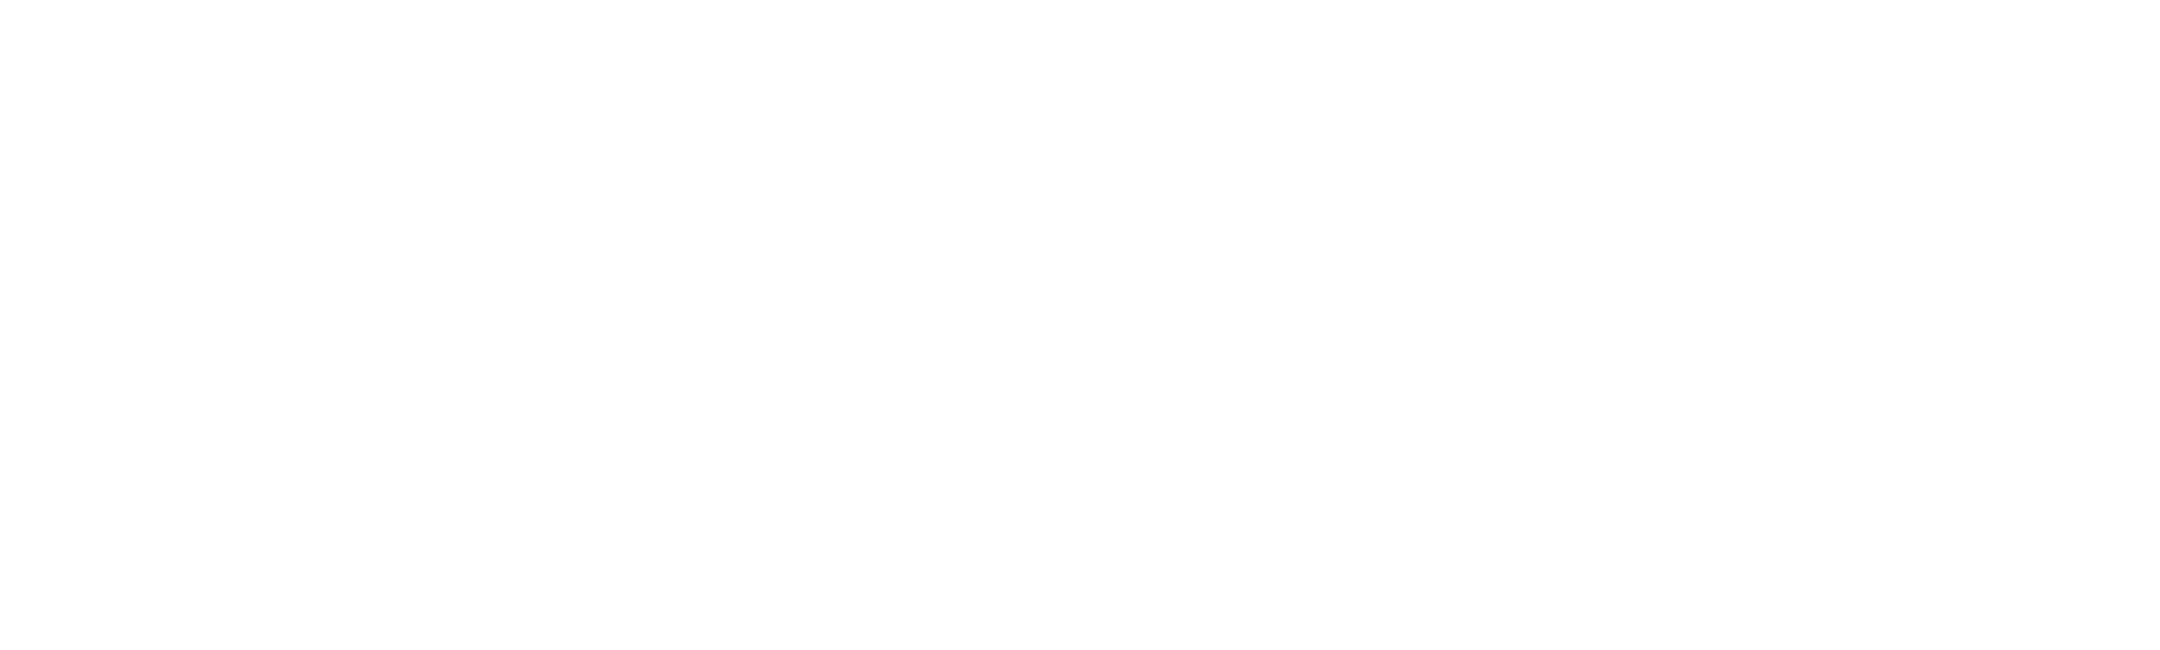 Platobné Systémy v Kryptomenách - FSFPAY.com